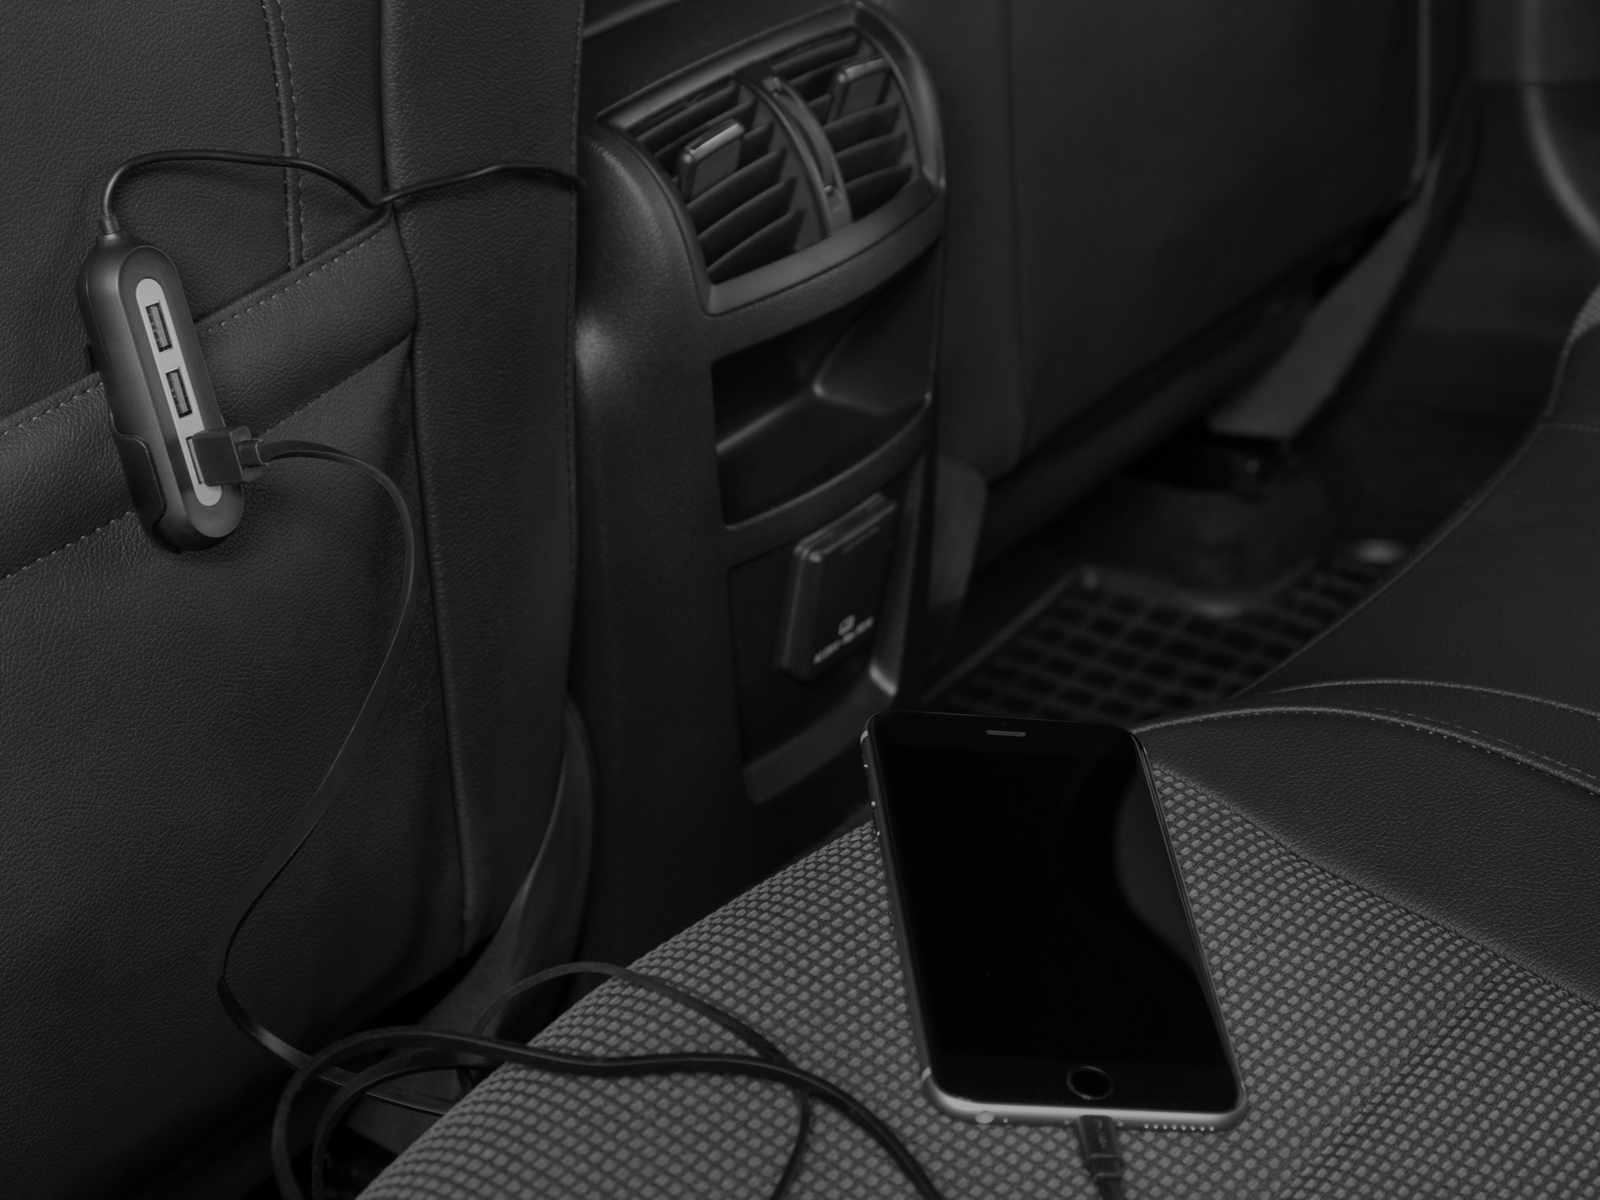 AVACOM CarHUB nabíječka do auta 5x USB výstup, černá 